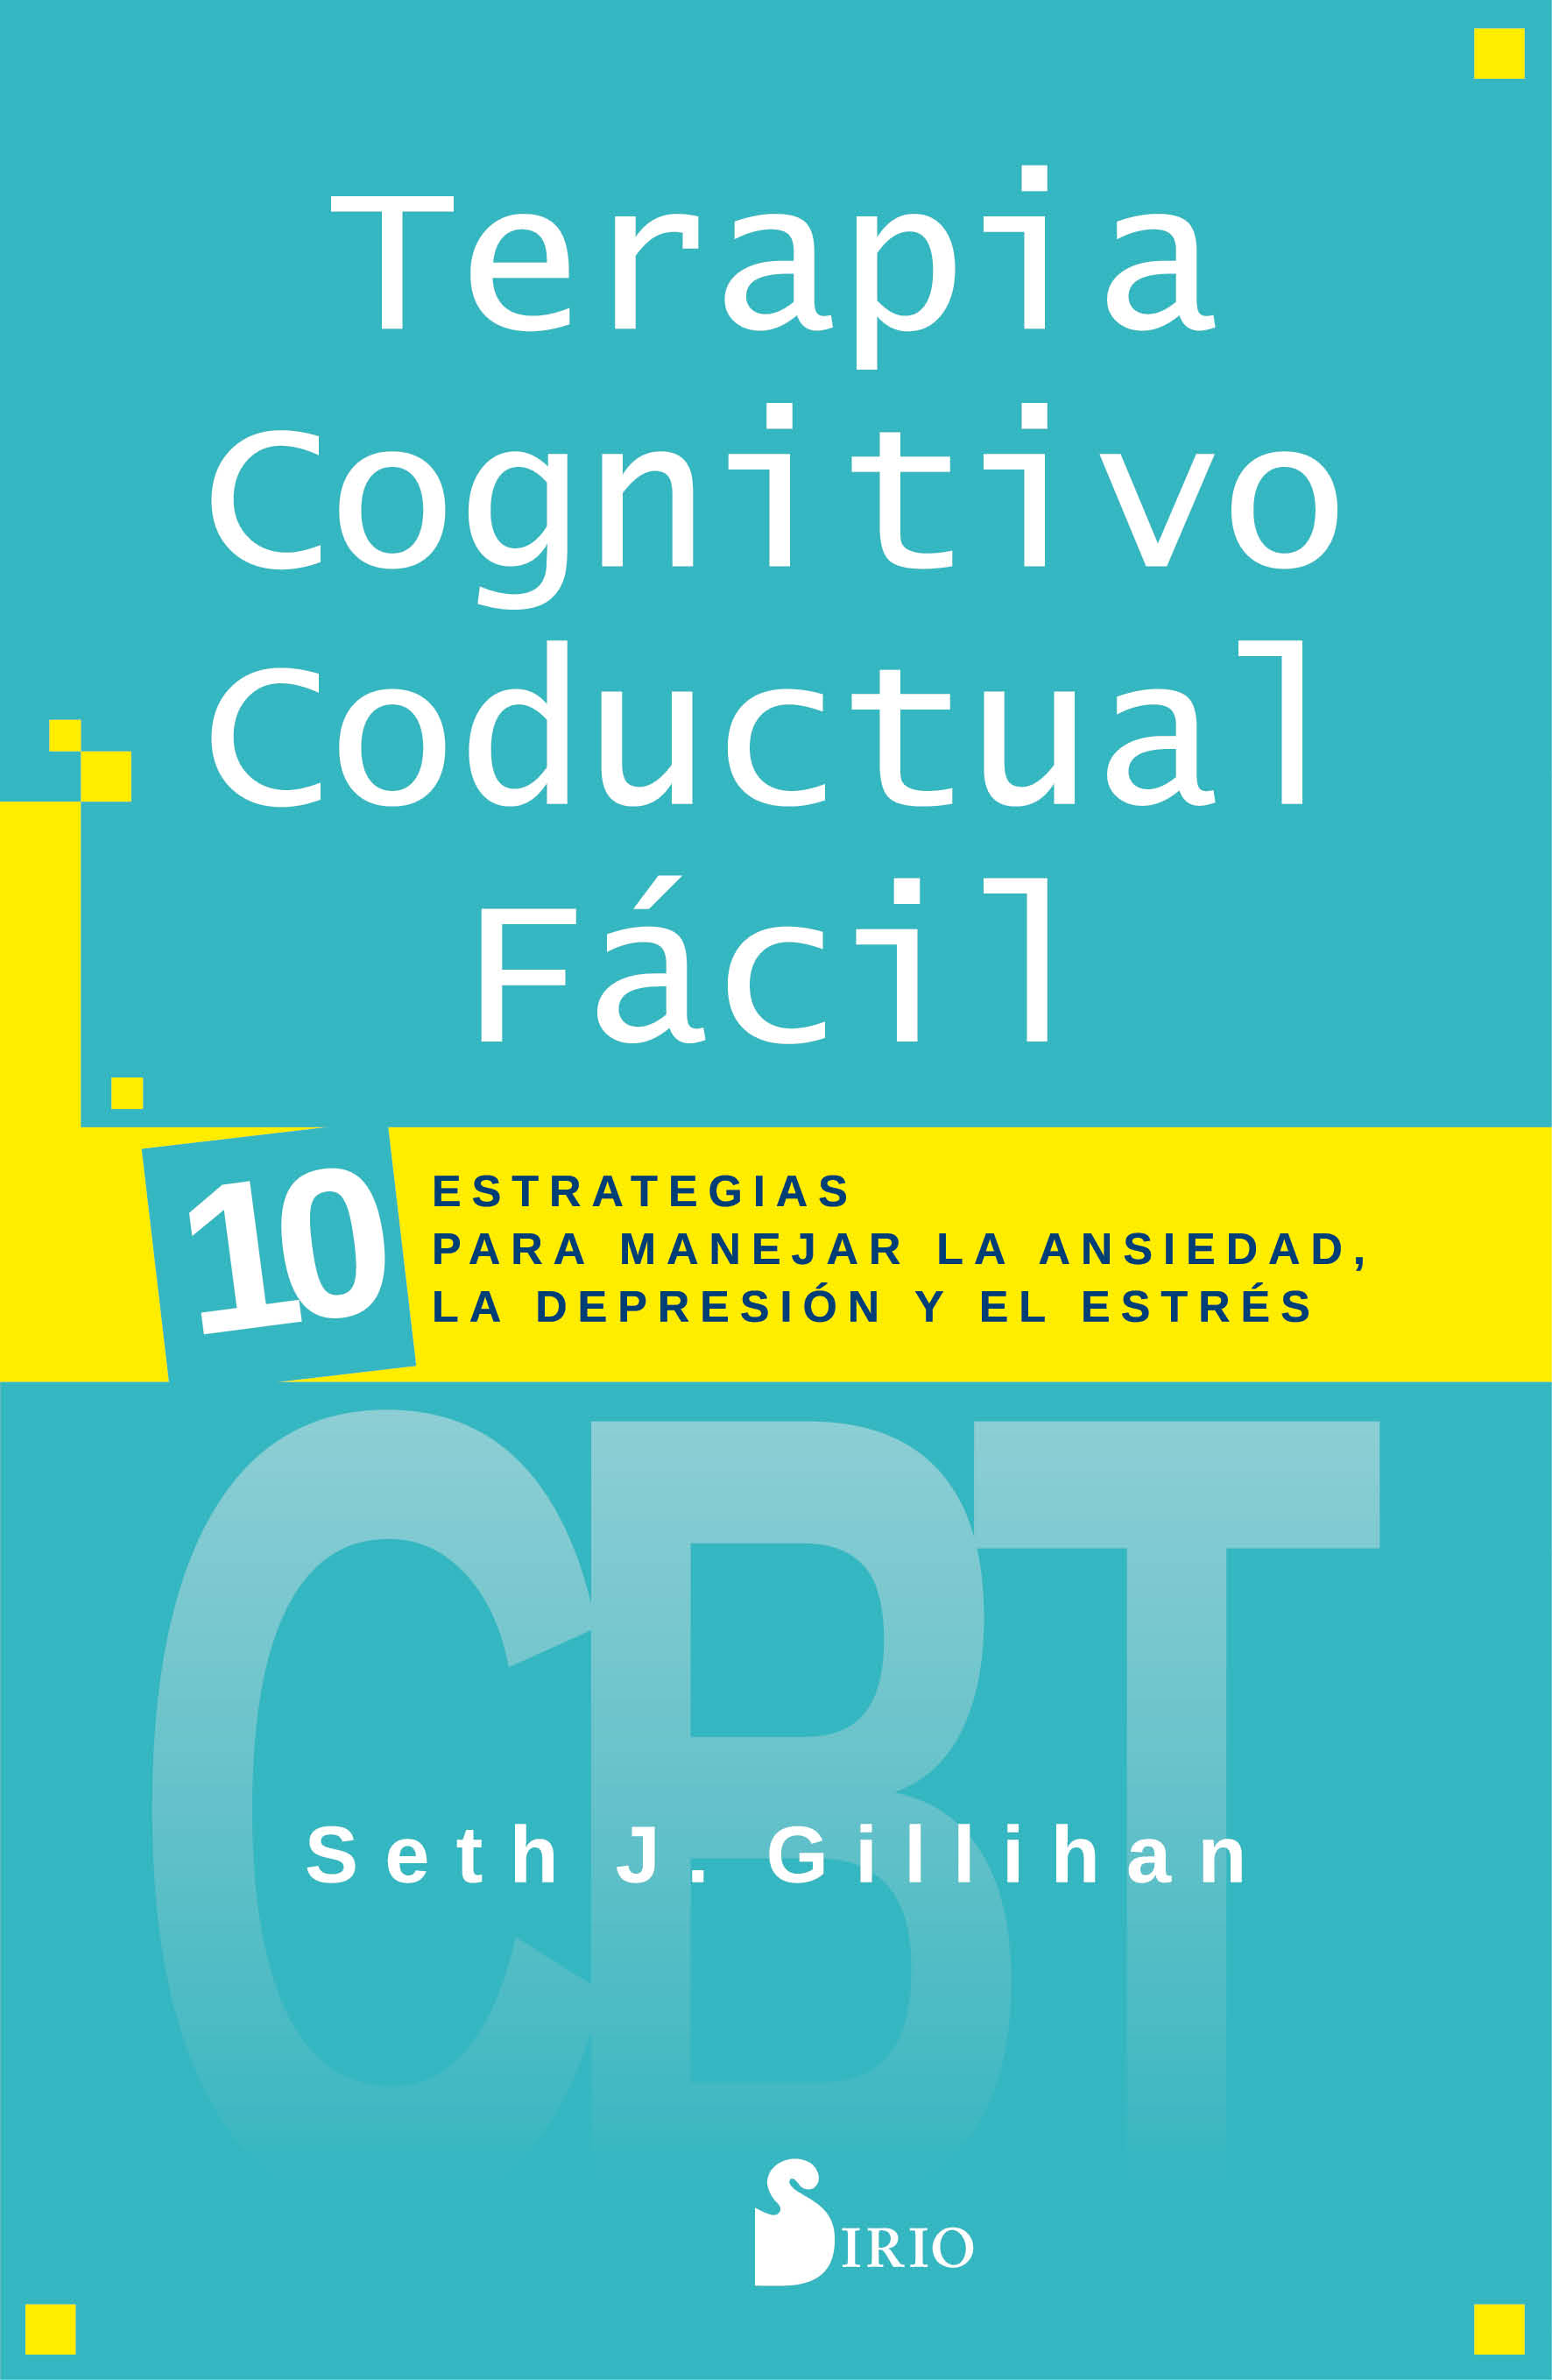 Terapia Cognitivo Conductal Fácil   «10 ESTRATEGIAS PARA MANEJAR LA DEPRESIÓN, LA ANSIEDAD Y EL ESTRÉS» (9788418000447)